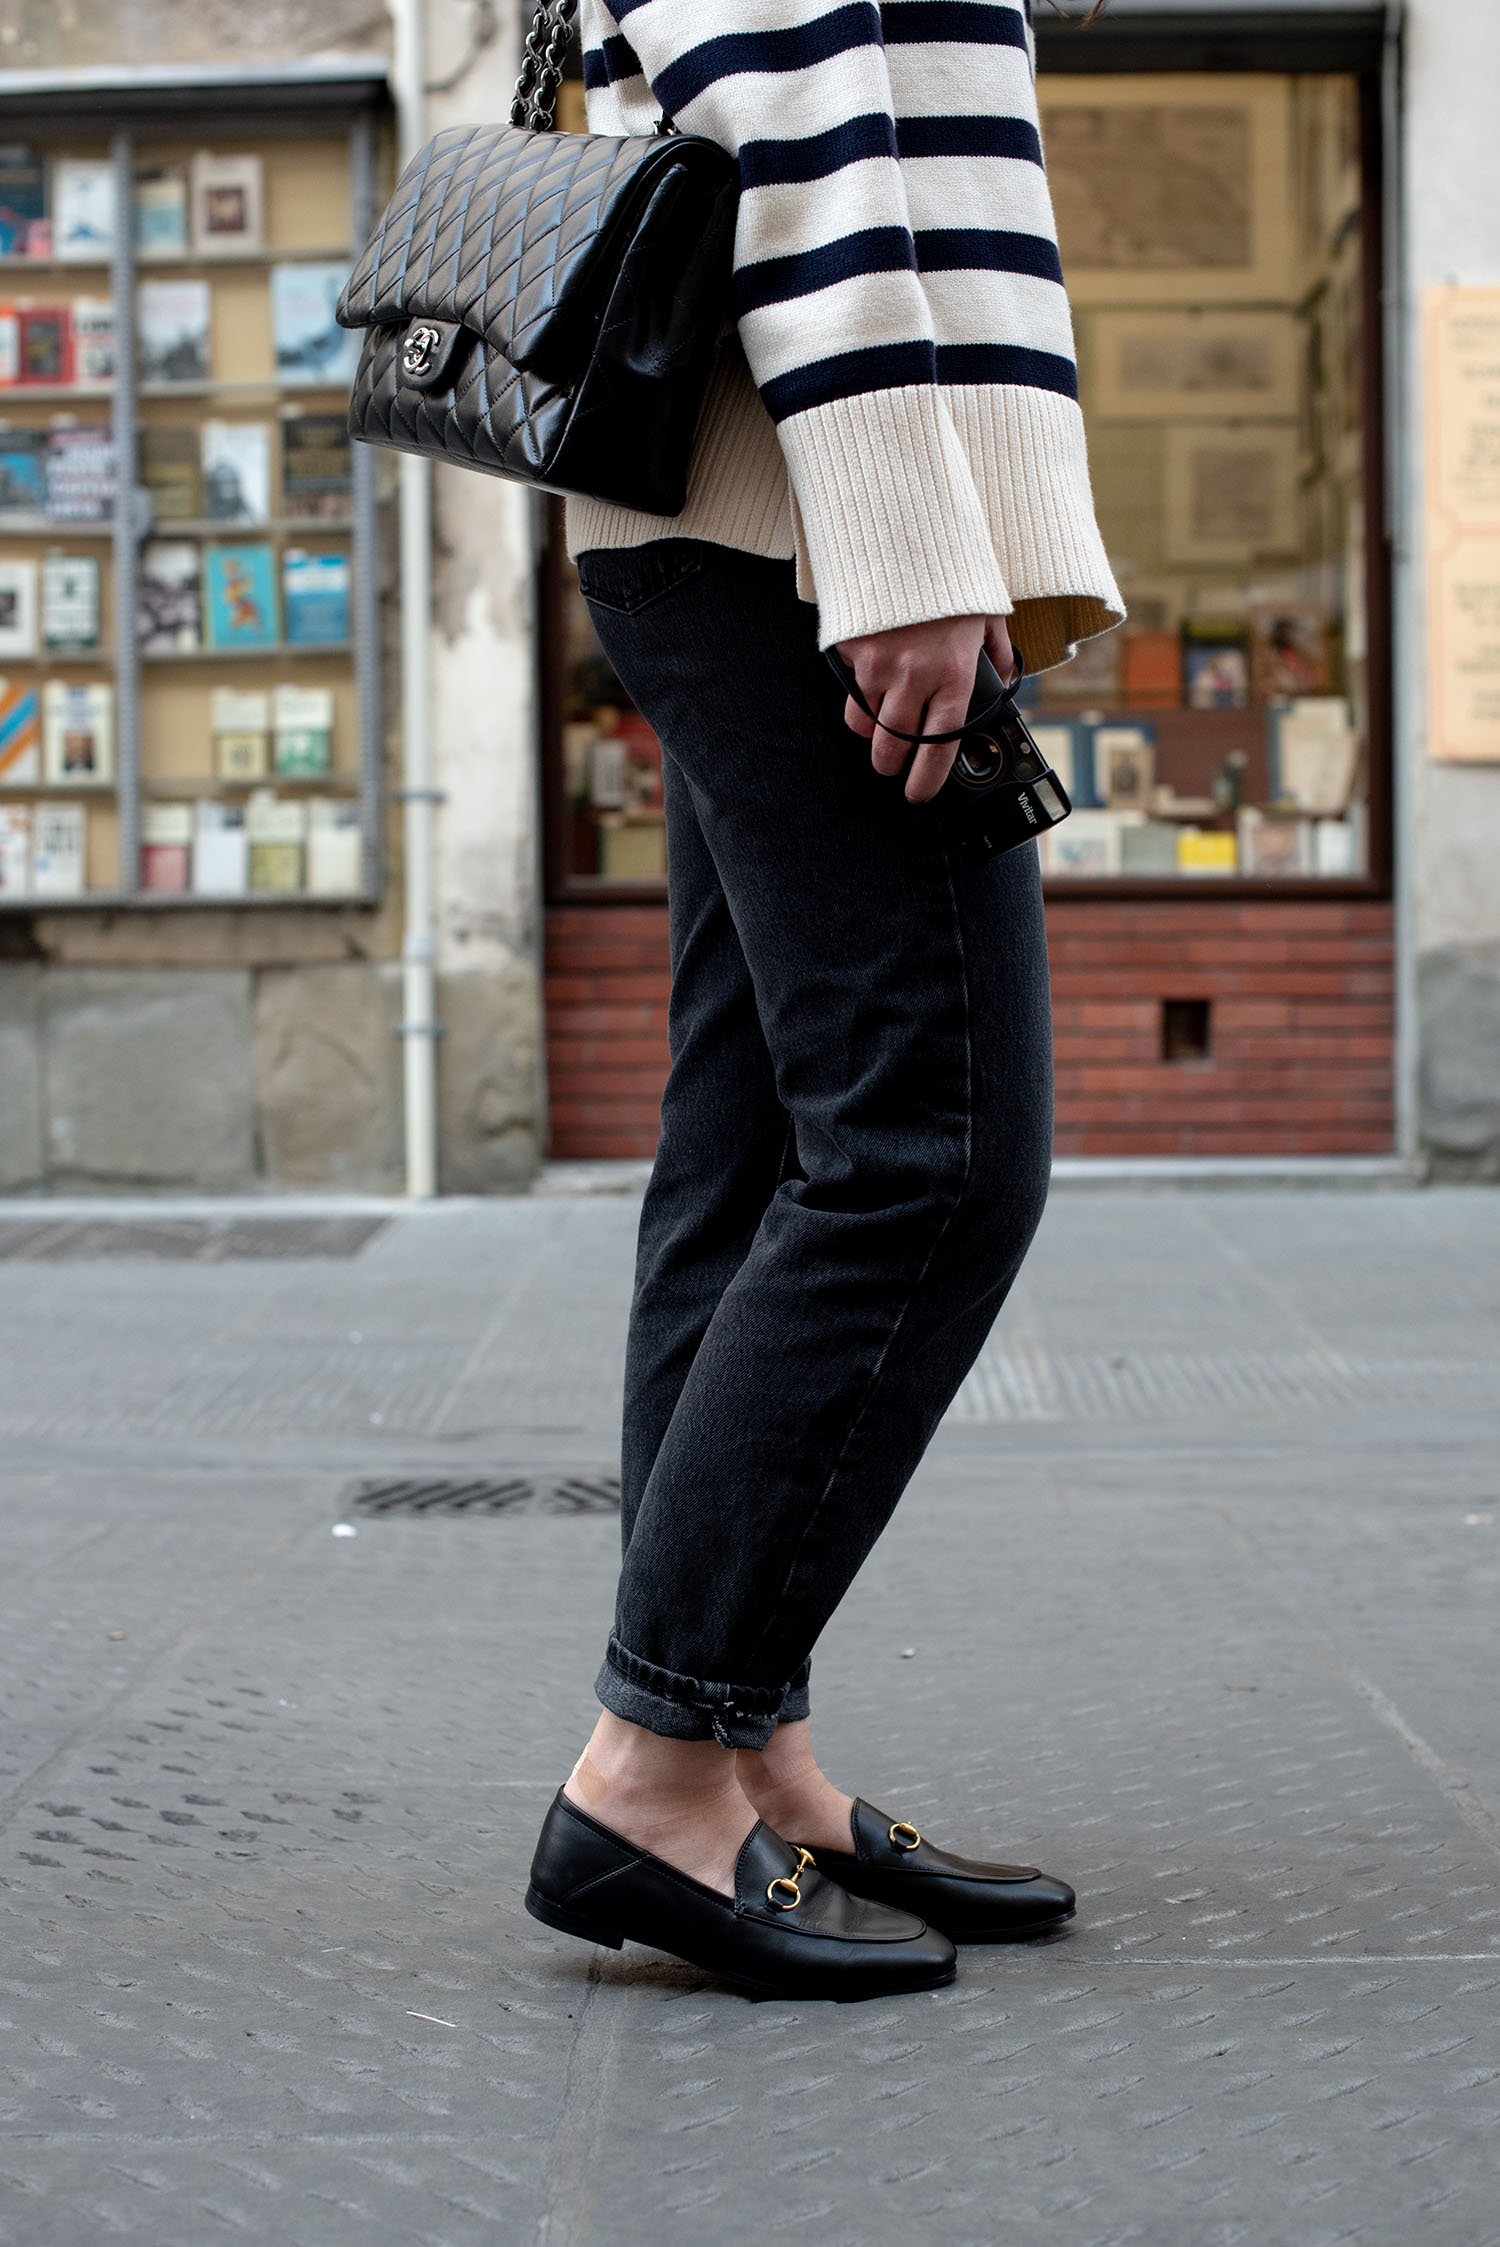 Coco & Vera - Gucci Princeton loafers, Zara striped sweater, Zara jeans